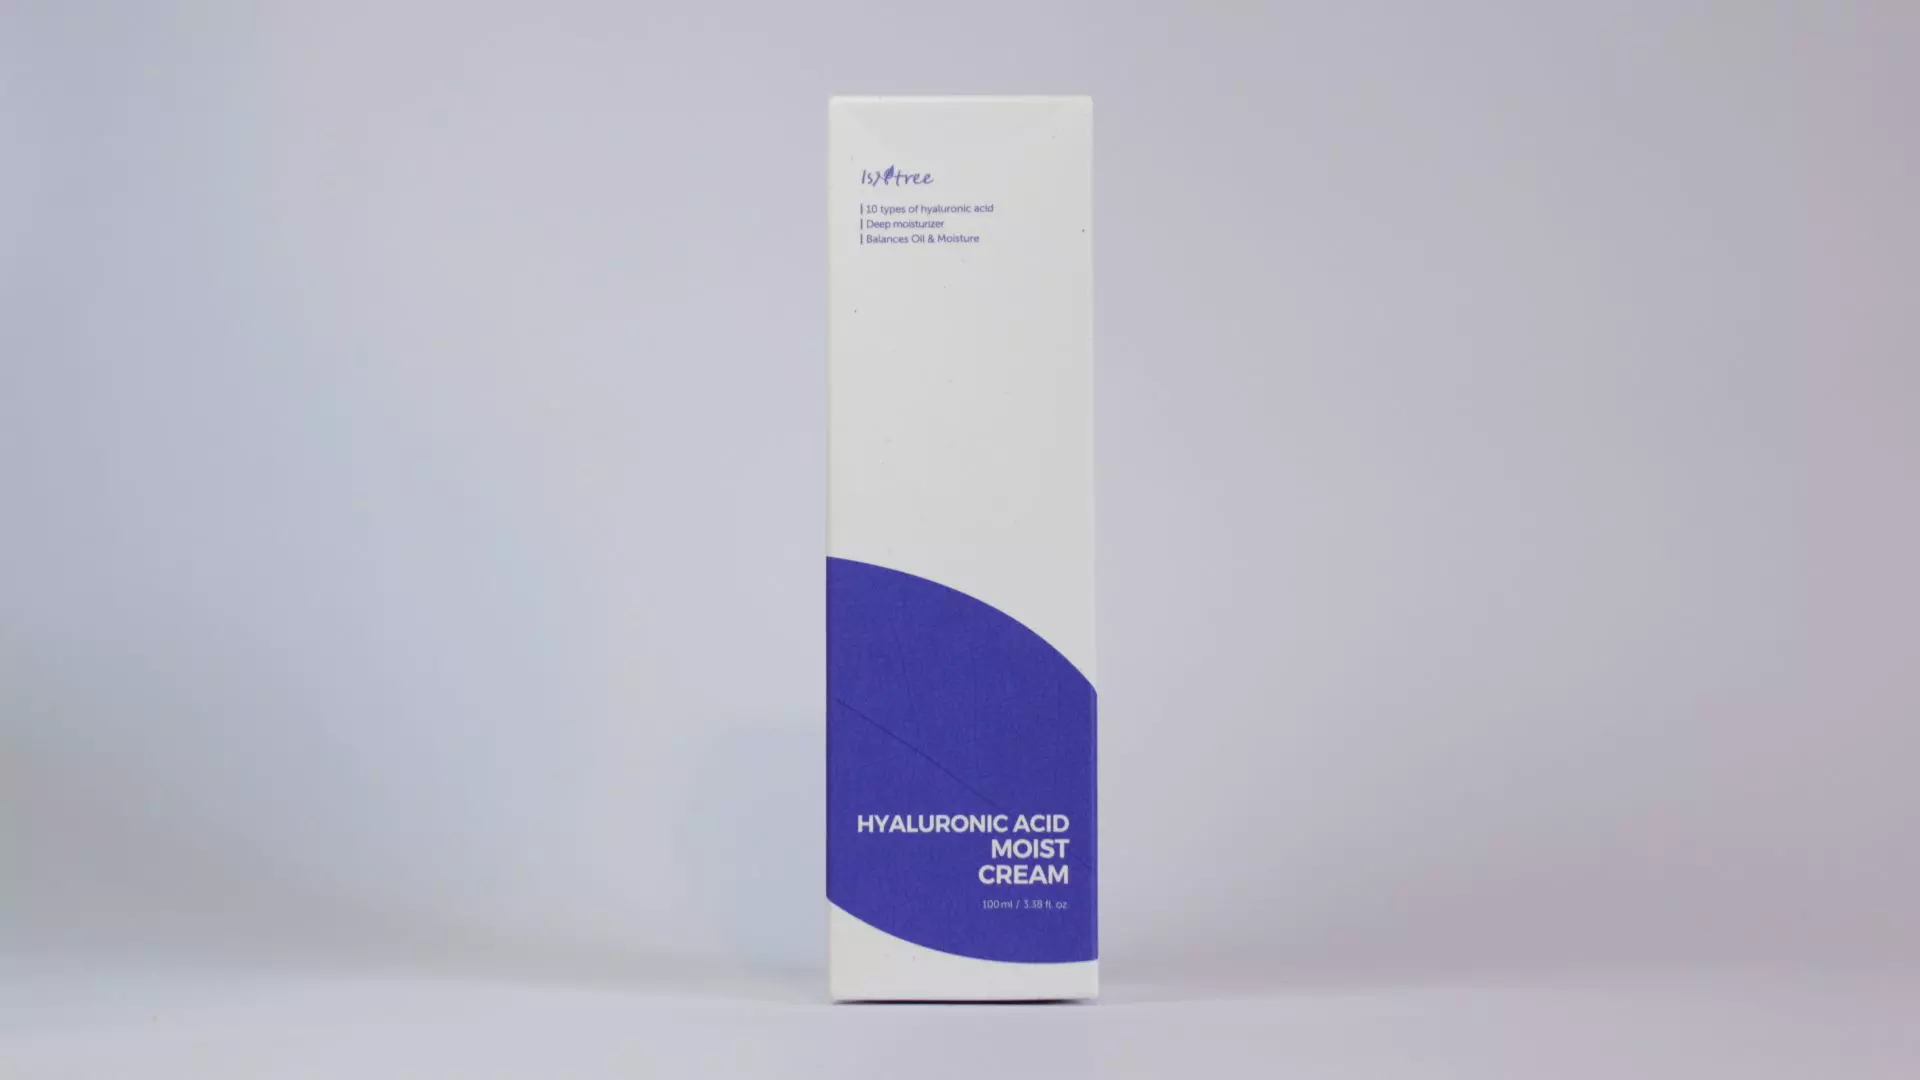 Crema humectante de ácido hialurónico 